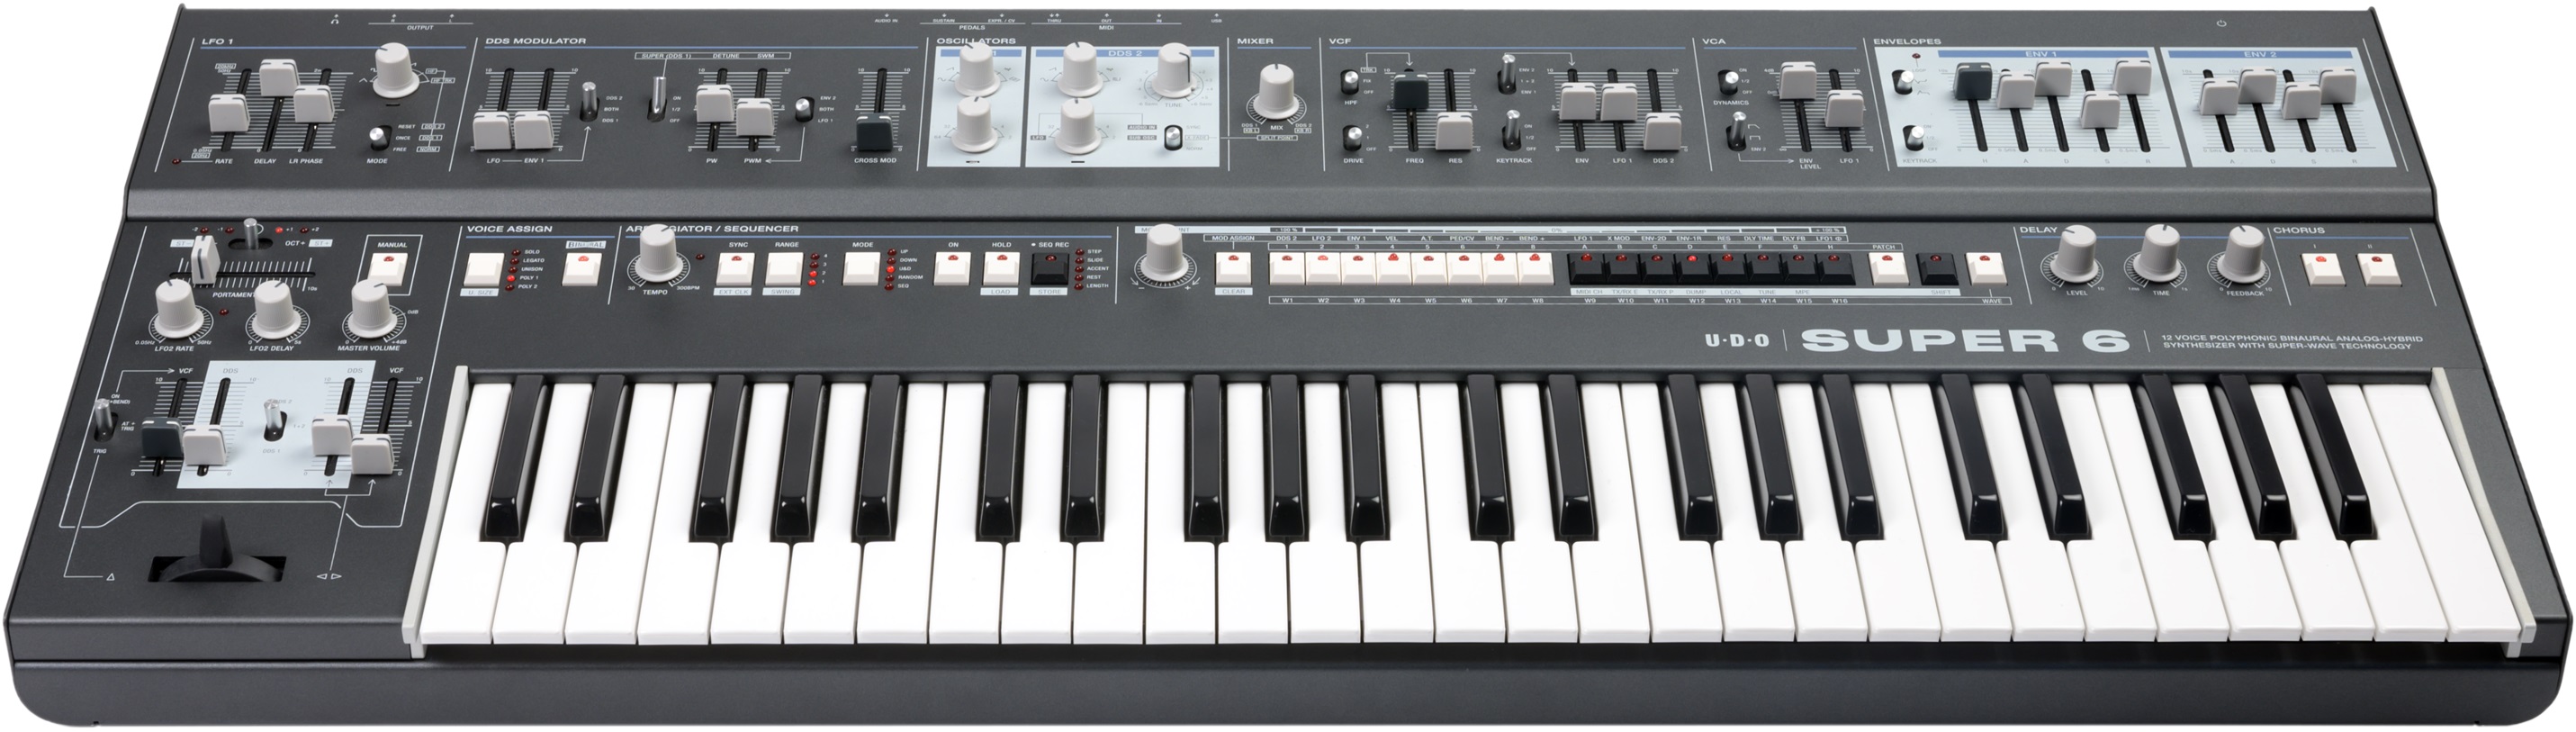 Udo Audio Super 6 Keyboard Black - Synthesizer - Variation 3